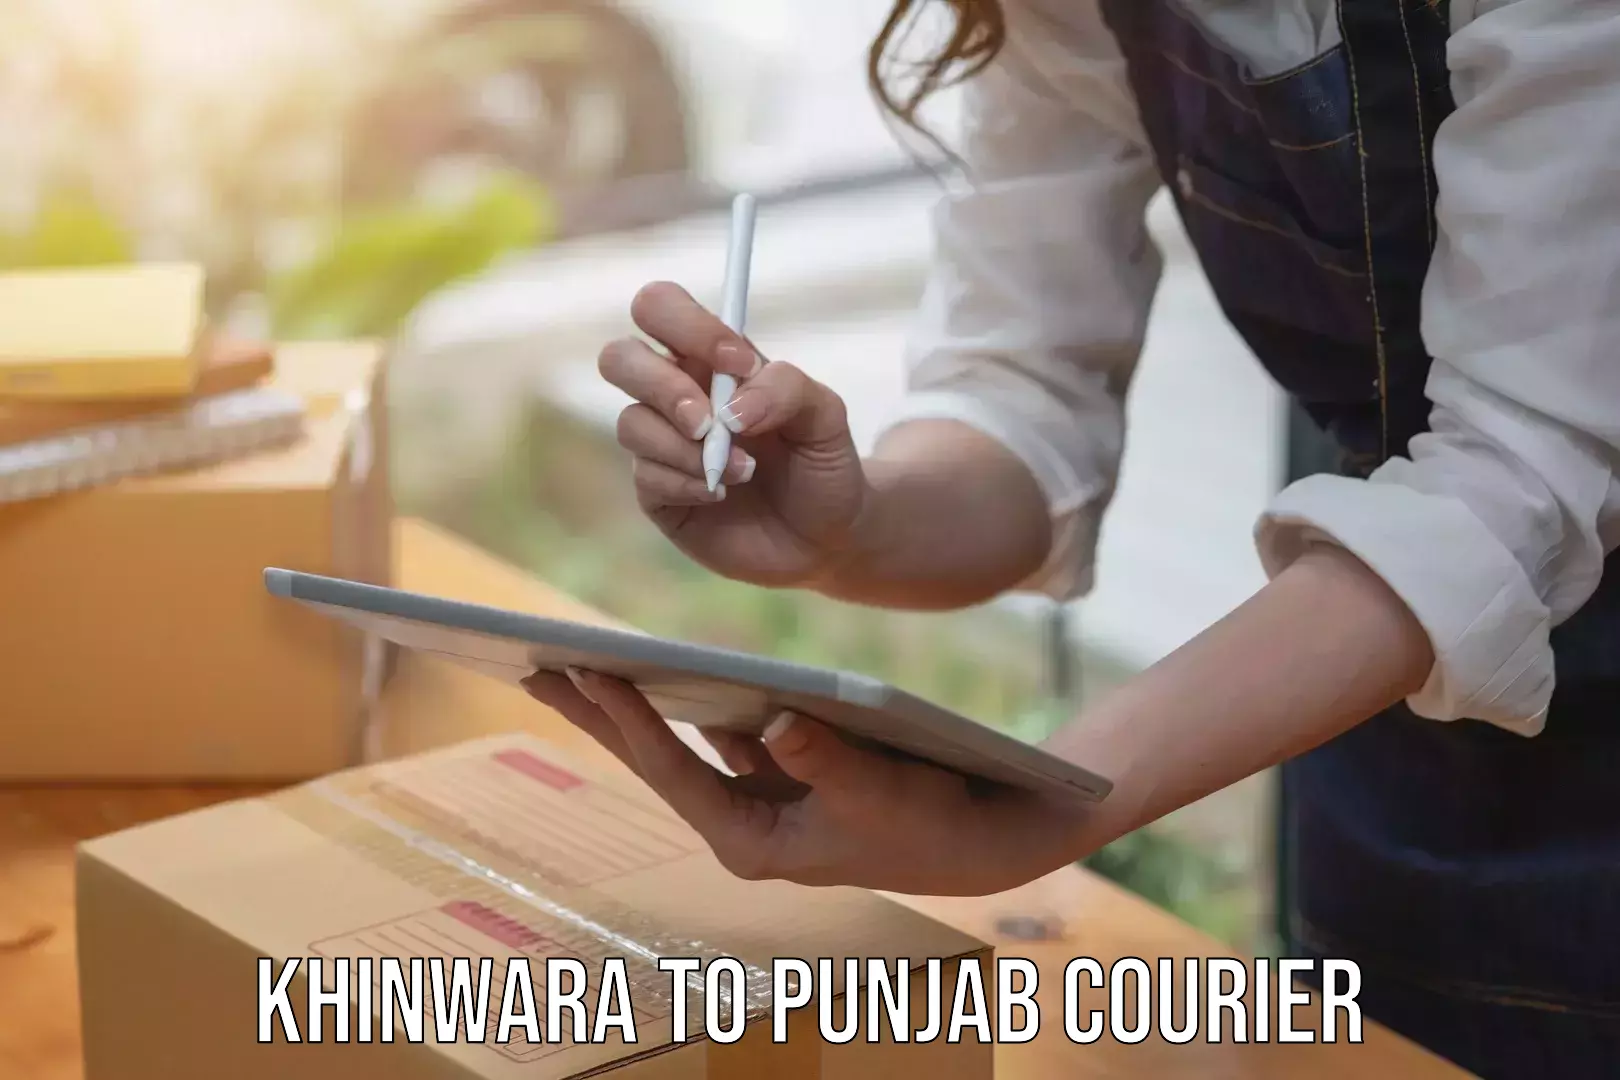 Express package handling Khinwara to Punjab